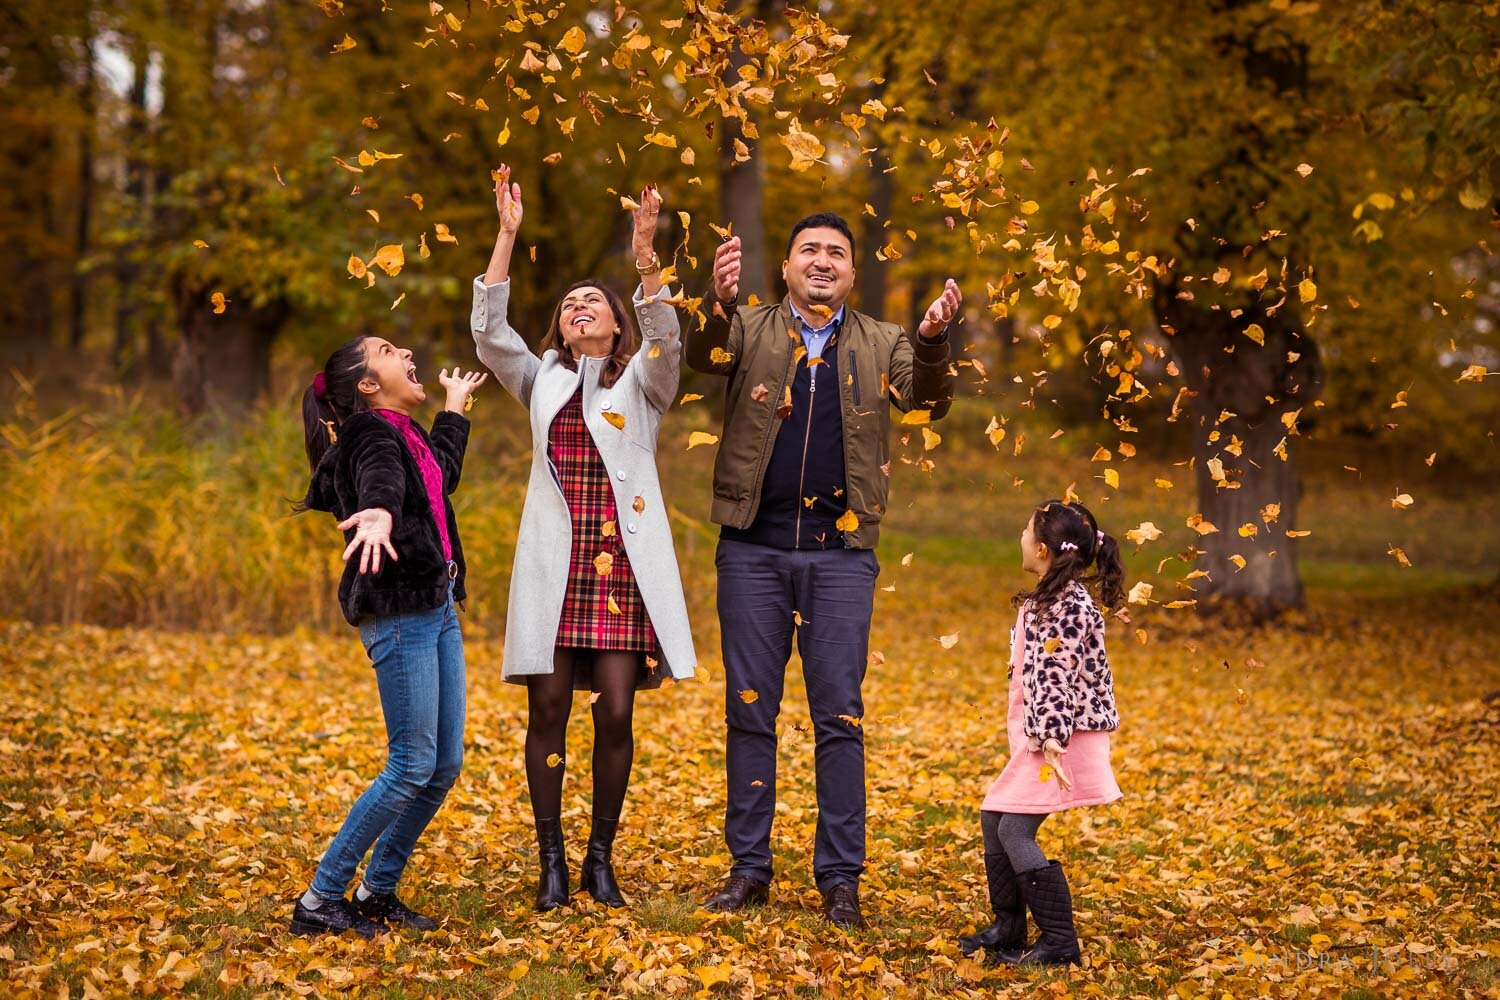 happy-autumn-family-photo-by-sandra-jolly-photography.jpg